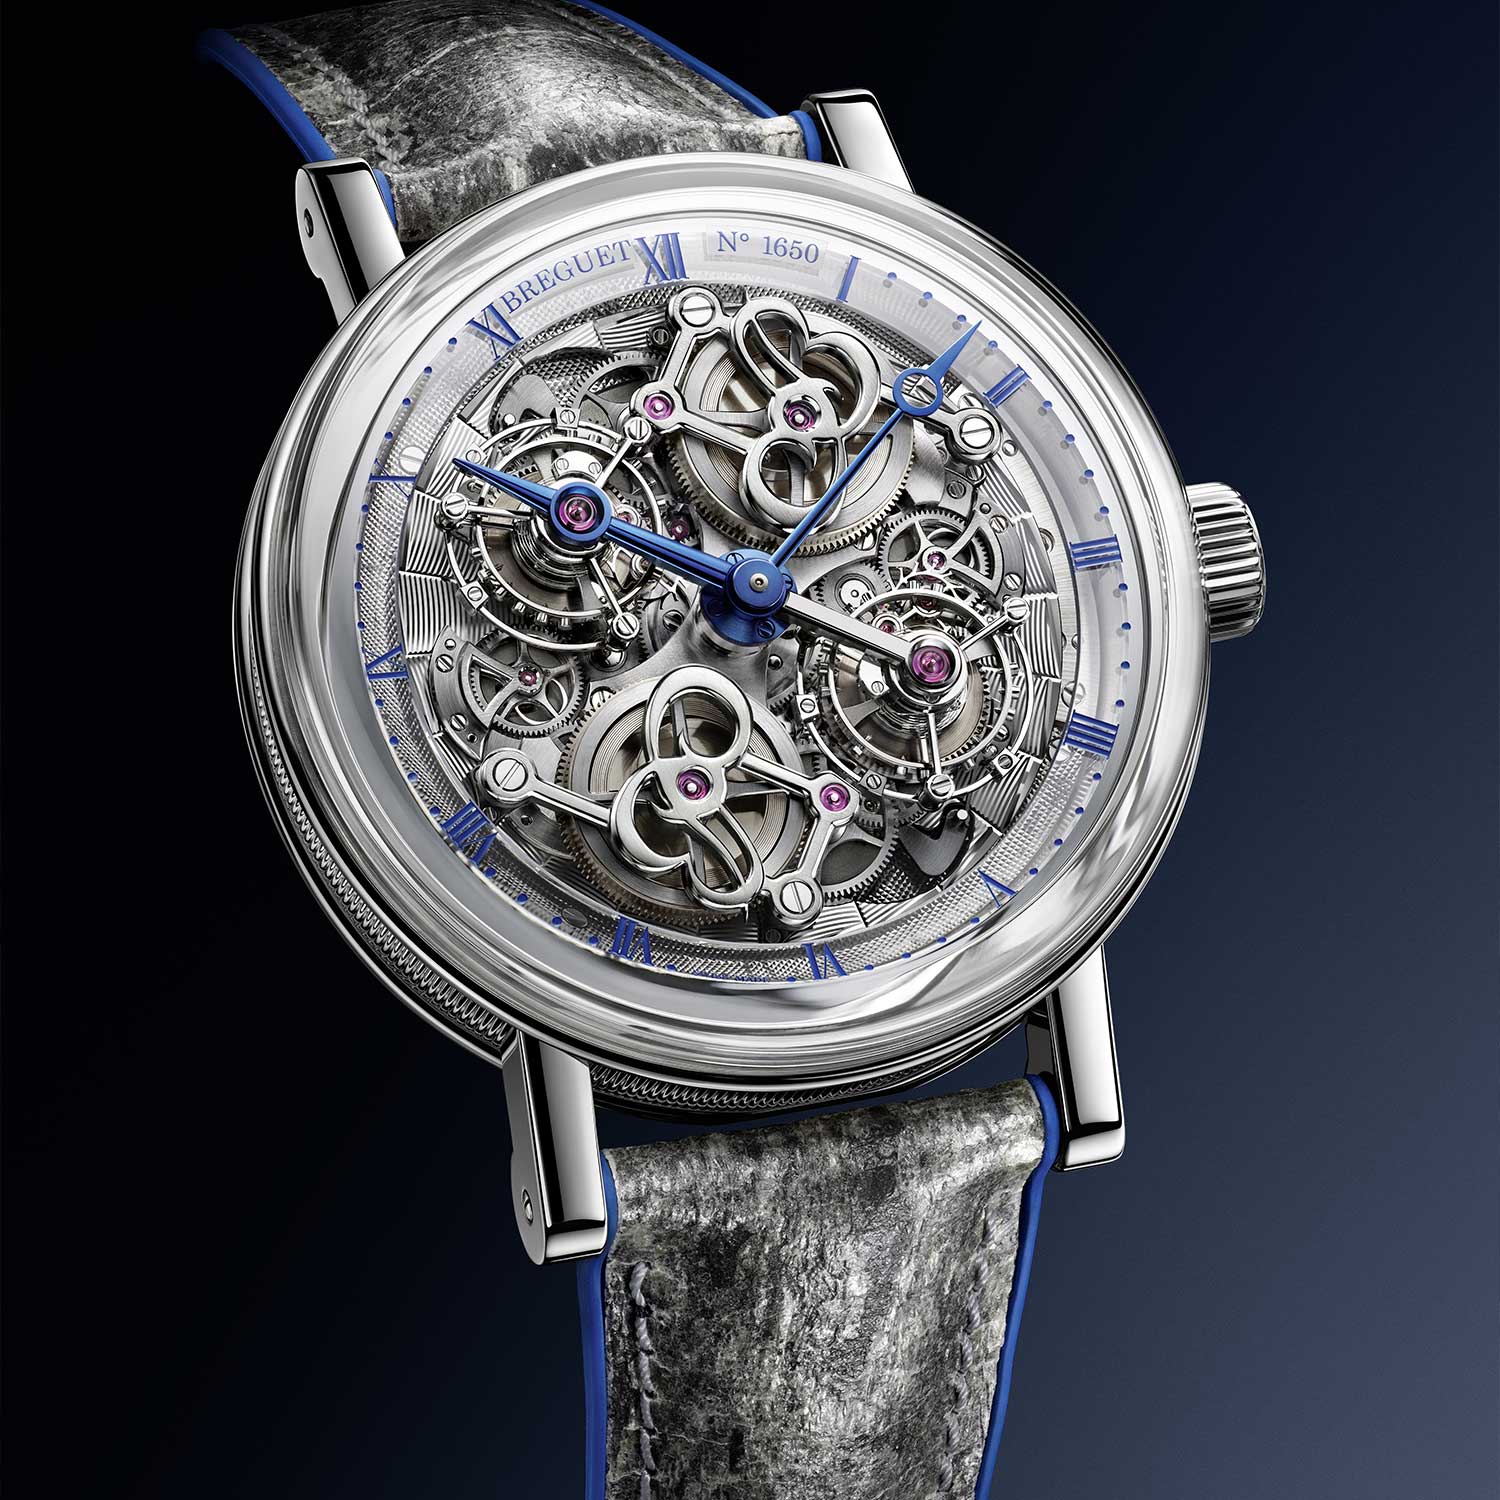 The Breguet Classique Double Tourbillon 5345 Quai de L'horloge